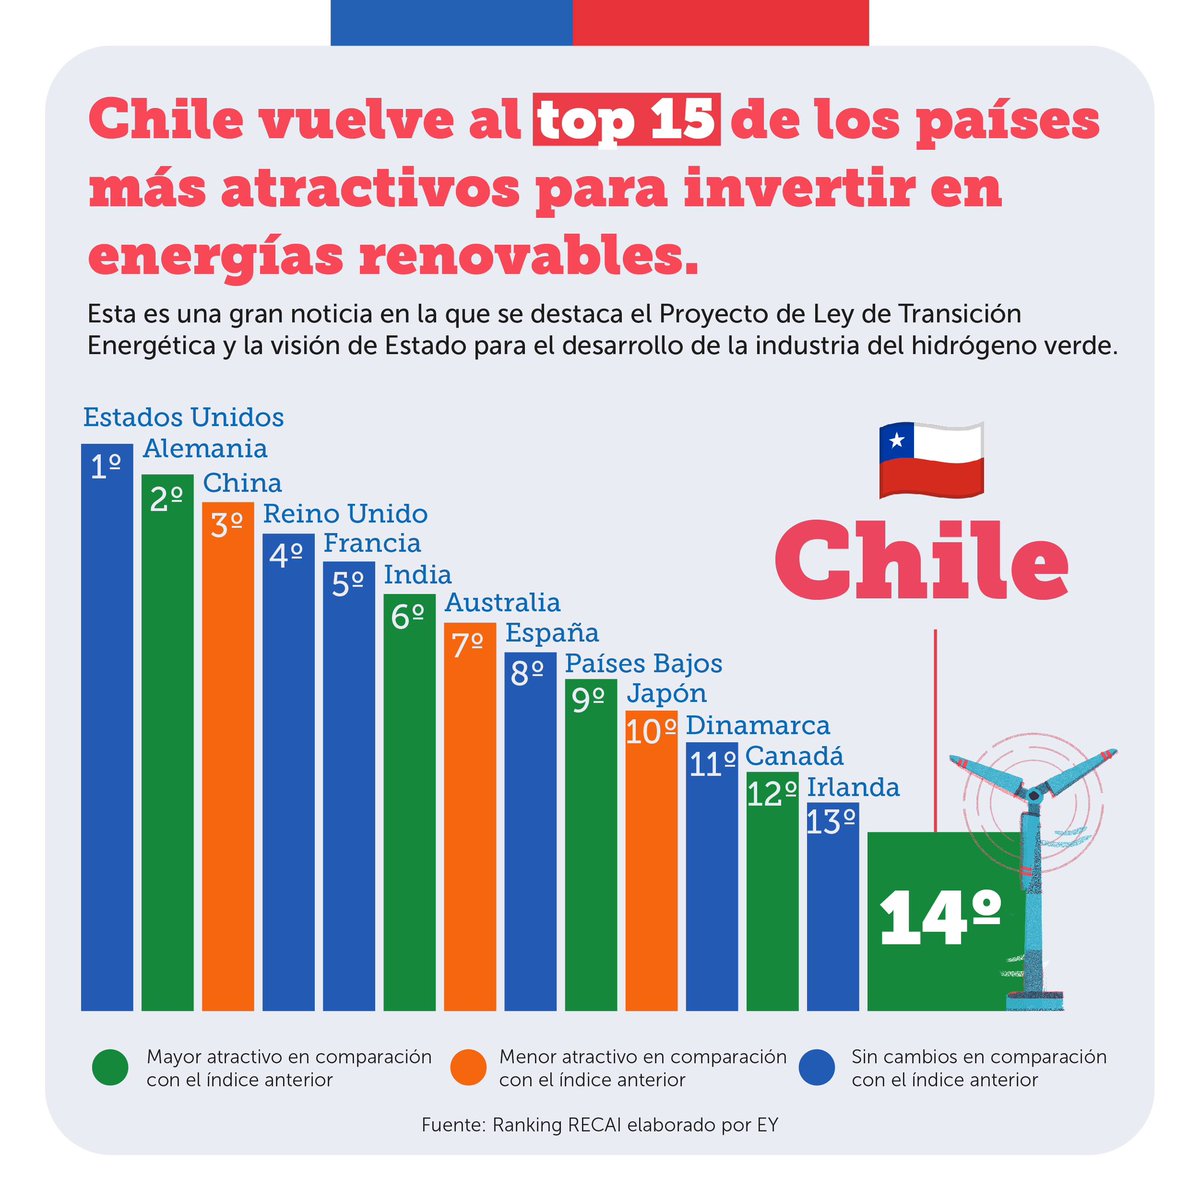 Chile vuelve al top 15 de los países más atractivos para invertir en energías renovables. ⚡️🇨🇱

Así lo señala el estudio realizado por @EYChile, destacando el Proyecto de Ley de Transición Energética y la visión de Estado para el desarrollo de la industria del hidrógeno verde.